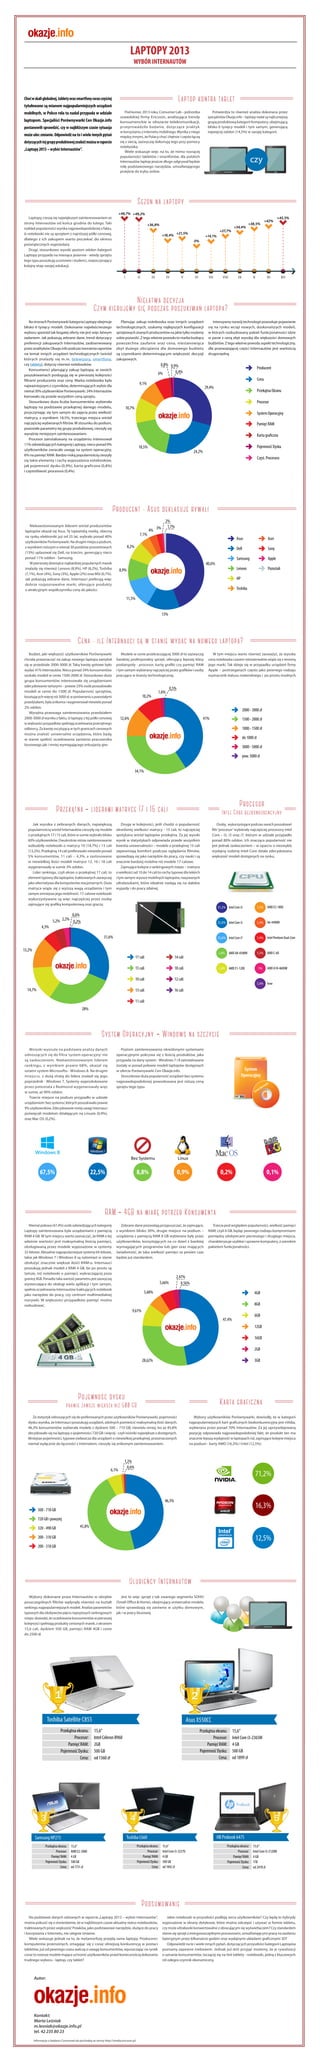 LAPTOPY 2013
WYBÓR INTERNAUTÓW

Laptop kontra tablet

Choć w skali globalnej, tablety oraz smartfony coraz częściej
tytułowane są mianem najpopularniejszych urządzeń

Potwierdza to również analiza dokonana przez
specjalistów Okazje.info – laptopy nadal są najliczniejszą
grupą produktową kategorii Komputery, obejmującą
blisko 6 tysięcy modeli i tym samym, generującą
najwięcej odsłon (14,5%) w swojej kategorii.

Pod koniec 2013 roku, Consumer Lab – jednostka
szwedzkiej firmy Ericsson, analizująca trendy
konsumenckie w obszarze telekomunikacji,
przeprowadziła badanie, dotyczące praktyk
w korzystaniu z Internetu mobilnego. Wynika z niego
między innymi, że Polacy choć chętnie i często łączą
się z siecią, zazwyczaj dokonują tego przy pomocy
notebooka.
Wiele wskazuje więc na to, że mimo rosnącej
popularności tabletów i smartfonów, dla polskich
Internautów laptop jeszcze długo odgrywał będzie
rolę podstawowego narzędzia, umożlwiającego
przejście do trybu online.

mobilnych, w Polsce rola ta nadal przypada w udziale
laptopom. Specjaliści Porównywarki Cen Okazje.info
postanowili sprawdzić, czy w najbliższym czasie sytuacja
może ulec zmianie. Odpowiedź na to i wiele innych pytań
dotyczących tej grupy produktowej znaleźć można w raporcie
„Laptopy 2013 – wybór Internautów”.

czy

Sezon na laptopy
+49,7% +49,2%

Laptopy, cieszą się największym zainteresowaniem ze
strony Internautów od końca grudnia do lutego. Taki
rozkład popularności wynika najprawdopodobniej z faktu,
iż notebooki nie są sprzętem z najniższej półki cenowej,
dlatego z ich zakupem warto poczekać do okresu
poświątecznych wyprzedaży.
Drugi, stosunkowo wysoki poziom odsłon kategorii
Laptopy przypada na miesiące jesienne - wtedy sprzętu
tego typu poszukują uczniowie i studenci, rozpoczynający
kolejny etap swojej edukacji.

+36,8%
+27,7%

+21,5%

+18,4%

+34,4%

+38,5%

+42%

+45,5%

+14,1%
0%

I

II

III

IV

V

VI

VII

VIII

IX

X

XI

XII

Niełatwa decyzja
Czym kierujemy się podczas poszukiwań laptopa?
Planując zakup notebooka oraz innych urządzeń
technologicznych, szukamy najlepszych konfiguracji
sprzętowych znanych producentów na jakie tylko możemy
sobie pozwolić. Z tego właśnie powodu to marka budząca
powszechne zaufanie oraz cena, niestanowiąca
zbyt dużego obciążenia dla domowego budżetu
są czynnikami determinującym większość decyzji
zakupowych.

Na stronach Porównywarki kategoria Laptopy obejmuje
blisko 6 tysięcy modeli. Dokonanie najwłaściwszego
wyboru spośród tak bogatej oferty nie jest więc łatwym
zadaniem. Jak pokazują zebrane dane, trend dotyczący
preferencji zakupowych Internautów, zaobserwowany
przez analityków Okazje.info podczas tworzenia raportów
na temat innych urządzeń technologicznych (wśród
których znalazły się m.in. telewizory, smartfony,
czy tablety), dotyczy również notebooków.
Konsumenci planujący zakup laptopa, w swoich
poszukiwaniach posługują się w pierwszej kolejności
filtrami producenta oraz ceny. Marka notebooka była
najważniejszym z czynników, determinujących wybór dla
niemal 30% użytkowników Porównywarki. 24% Internautów
kierowało się przede wszystkim ceną sprzętu.
Stosunkowo duża liczba konsumentów wybierała
laptopy na podstawie przekątnej danego modelu,
przyczyniając się tym samym do zajęcia przez wielkość
matrycy, z wynikiem 18,5%, trzeciego miejsca wśród
najczęściej wybieranych filtrów. W stosunku do podium,
pozostałe parametry tej grupy produktowej, cieszyły się
wyraźnie mniejszym zainteresowaniem.
Procesor zainstalowany na urządzeniu interesował
11% odwiedzających kategorię Laptopy, nieco ponad 9%
użytkowników zwracało uwagę na system operacyjny,
6% na pamięć RAM. Bardzo niską popularnością cieszyły
się takie elementy i cechy wyposażenia notebooków,
jak pojemność dysku (0,9%), karta graficzna (0,8%)
i częstotliwość procesora (0,4%).

Intensywny rozwój technologii powoduje pojawianie
się na rynku wciąż nowych, doskonalszych modeli,
w których rozbudowany pakiet funkcjonalności idzie
w parze z ceną zbyt wysoką dla większości domowych
budżetów. Z tego właśnie powodu aspekt technologiczny,
dla przeważającej części Internautów jest wartością
drugorzędną.

0,8% 0,9%
0,4%
6%

Producent
Cena

9,1%

29,4%

Przekątna Ekranu
Procesor

10,7%

System Operacyjny
Pamięć RAM
Karta graficzna
18,5%

Pojemność Dysku

24,2%

Częst. Procesora

Producent - Asus deklasuje rywali
Niekwestionowanym liderem wśród producentów
laptopów okazał się Asus. Tę tajwańską markę, obecną
na rynku elektroniki już od 25 lat, wybrało ponad 40%
użytkowników Porównywarki. Na drugim miejscu podium,
z wynikiem niższym o niemal 30 punktów procentowych
(13%) uplasował się Dell, na trzecim, generujący nieco
ponad 11% odsłon - Samsung.
W pierwszej dziesiątce najbardziej popularnych marek
znalazły się również: Lenovo (8,9%), HP (8,2%), Toshiba
(7,1%), Acer (4%), Sony (3%), Apple (2%) oraz MSI (0,7%).
Jak pokazują zebrane dane, Internauci preferują więc
dobrze rozpoznawalne marki, oferujące produkty
o atrakcyjnym współczynniku ceny do jakości.

7,1%

2%
1,7%
4% 3%
Asus
Dell

8,9%

Apple

Lenovo

40,6%

Sony

Samsung

8,2%

Acer

Pozostali

HP
Toshiba
11,5%
13%

Cena - ile Internauci są w stanie wydać na nowego laptopa?
Budżet, jaki większość użytkowników Porównywarki
chciała przeznaczyć na zakup nowego laptopa zamykał
się w przedziale 2000-3000 zł. Taką kwotę gotowe było
wydać 41% Internautów. Nieco ponad 34% konsumentów
szukało modeli w cenie 1500-2000 zł. Stosunkowo duża
grupa konsumentów interesowała się urządzeniami
zdecydowanie tańszymi – prawie 23% osób poszukiwało
modeli w cenie do 1500 zł. Popularność sprzętów,
kosztujących więcej niż 3000 zł, w porównaniu z pozostałymi
przedziałami, była znikoma i wygenerował niewiele ponad
2% odsłon.
Wyraźna przewaga zainteresowania przedziałem
2000-3000 zł wynika z faktu, iż laptopy z tej półki cenowej
w większości przypadków spełniają oczekiwania przeciętnego
odbiorcy. Za kwotę oscylującą w tych granicach cenowych
można znaleźć uniwersalne urządzenia, które będą
w stanie spełnić oczekiwania zarówno pracownika
biurowego jak i mniej wymagającego entuzjasty gier.

Modele w cenie przekraczającej 3000 zł to zazwyczaj
bardziej profesjonalny sprzęt, oferujący lepszej klasy
podzespoły - procesor, kartę graﬁki czy pamięć RAM
i tym samym wybierany najczęściej przez grafików i osoby
pracujące w branży technologicznej.

10,2%

1,6%

W tym miejscu warto również zauważyć, że wysoka
cena notebooka czasem nierozerwalnie wiąże się z renomą
jego marki. Tak dzieje się w przypadku urządzeń firmy
Apple – postrzeganych często jako pewnego rodzaju
wyznacznik statusu materialnego i po prostu modnych.

0,5%

2000 - 3000 zł
12,6%

41%

1500 - 2000 zł
1000 - 1500 zł
do 1000 zł
3000 - 5000 zł
pow. 5000 zł

34,1%

Procesor

Przekątna - liderami matryce 17 i 15 cali
Jak wynika z zebranych danych, największą
popularnością wśród Internautów cieszyły się modele
o przekątnych 17 i 15 cali, które w sumie wybrało blisko
60% użytkowników. Dwukrotnie niższe zainteresowanie
wzbudziły notebooki o matrycy 10 (14,7%) i 13 cali
(13,2%). Przekątną 14 cali preferowało niewiele ponad
5% konsumentów, 11 cali – 4,3%, a zastosowane
w niewielkiej ilości modeli matryce 12, 16 i 18 cali
wygenerowały w sumie 3% odsłon.
Lider rankingu, czyli ekran o przekątnej 17 cali, to
element typowy dla laptopów, traktowanych zazwyczaj
jako alternatywa dla komputerów stacjonarnych. Duża
matryca wiąże się z wyższą wagą urządzenia i tym
samym zmniejsza jego mobilność. 17-calowe notebooki
wykorzystywane są więc najczęściej przez osoby
zajmujące się grafiką komputerową oraz graczy.

4,3%

Intel Core bezkonkurencyjny

Druga w kolejności, jeśli chodzi o popularność
określonej wielkości matrycy - 15 cali, to najczęściej
spotykana wśród laptopów przekątna. Za jej wysoki
wynik w statystykach odpowiada przede wszystkim
kwestia uniwersalności – modele o przekątnej 15 cali
zapewniają komfort podczas oglądania filmów,
sprawdzają się jako narzędzie do pracy, czy nauki i są
znacznie bardziej mobilne niż modele 17-calowe.
Zajmujące kolejne z rankingowych miejsc – matryce
o wielkości od 10 do 14 cali to cechy typowe dla lekkich
i tym samym wysoce mobilnych laptopów, nazywanych
ultrabookami, które idealnie nadają się na dalekie
wyjazdy i do pracy zdalnej.

Osoby, wykorzystujące podczas swoich poszukiwań
filtr ‘procesor’ wybierały najczęściej procesory Intel
Core – i5, i3 oraz i7, którym w udziale przypadło
ponad 80% odsłon. Ich znacząca popularność nie
jest jednak zaskoczeniem – w oparciu o niezwykle
wydajną rodzinę Intel Core działa zdecydowana
większość modeli dostępnych na rynku.

31,2% Intel Core i5

17 cali
15 cali
10 cali

Intel Pentium Dual-Core

AMD A8-4500M

1,3%

AMD C-60

AMD E1-1200

12 cali

13 cali

14,7%

18 cali

1,4%

2,4%

14 cali

A6-4400M

2,8%

13,2%

1,4%

25,6% Intel Core i7

31,6%

AMD E2-1800

25,8% Intel Core i3

0,6%
2,2%
5,2%
0,2%

1,5%

16 cali

1%

5,6%

AMD A10-4600M

Inne

11 cali
28%

System Operacyjny - Windows na szczycie
Wnioski wysnute na podstawie analizy danych
odnoszących się do filtra ‘system operacyjny’ nie
są zaskoczeniem. Niekwestionowanym liderem
rankingu, z wynikiem prawie 68%, okazał się
ostatni system Microsoftu - Windows 8. Na drugim
miejscu, z dużą stratą do lidera znalazł się jego
poprzednik - Windows 7. Systemy wyprodukowane
przez potentata z Redmond wygenerowały więc
w sumie, aż 90% odsłon.
Trzecie miejsce na podium przypadło w udziale
urządzeniom ‘bez systemu’, których poszukiwało prawie
9% użytkowników. Zdecydowanie mniej uwagi Internauci
poświęcali modelom działającym na Linuxie (0,9%),
oraz Mac OS (0,2%).

Poziom zainteresowania określonymi systemami
operacyjnymi pokrywa się z ilością produktów, jaka
przypada na dany system - Windows 7 i 8 zainstalowane
zostały w ponad połowie modeli laptopów dostępnych
w ofercie Porównywarki Cen Okazje.info.
Stosunkowo duża popularność urządzeń bez systemu
najprawdopodobniej powodowana jest niższą ceną
sprzętu tego typu.

Bez Systemu

67,5%

Linux

8,8%

0,9%

22,5%

0,2%

0,1%

RAM - 4GB na miarę potrzeb Konsumenta
Niemal połowa (47,4%) osób odwiedzających kategorię
Laptopy zainteresowana była urządzeniami z pamięcią
RAM 4 GB. W tym miejscu warto zaznaczyć, że RAM o tej
właśnie wartości jest maksymalną ilością pamięci,
obsługiwaną przez modele wyposażone w systemy
32-bitowe. Aktualnie najpopularniejsze systemy 64-bitowe,
takie jak Windows 7 i Windows 8 są natomiast w stanie
obsłużyć znacznie większe ilośći RAM-u. Internauci
poszukują jednak modeli z RAM 4 GB, bo po prostu są
tańsze, niż notebooki o pamięci, wykraczającej poza
granicę 4GB. Ponadto taka wartość parametru jest zazwyczaj
wystarczająca do obsługi wielu aplikacji i tym samym,
spełnia oczekiwania Internautów traktujących notebook
jako narzędzie do pracy, czy centrum multimedialnej
rozrywki. W większości przypadków pamięć można
rozbudować.

Zebrane dane pozwalają przypuszczać, że zajmujące,
z wynikiem blisko 30%, drugie miejsce na podium –
urządzenia z pamięcią RAM 8 GB wybierane były przez
użytkowników, korzystających na co dzień z bardziej
wymagających programów lub gier oraz mających
świadomość, że taka wielkość pamięci za pewien czas
będzie już standardem.

5,66%

Trzecia pod względem popularności, wielkość pamięci
RAM, czyli 6 GB, będąc pewnego rodzaju kompromisem
pomiędzy zdobywcami pierwszego i drugiego miejsca,
charakteryzuje szybkie i sprawne komputery, z szerokim
pakietem funkcjonalności.

2,47%
0,56%

5,68%

4GB
8GB

9,61%

6GB

47,4%

12GB
16GB
2GB
28,62%

3GB

Pojemność dysku

Karta graficzna

prawie zawsze większa niż 500 GB
Ze statystyk odnoszących się do preferowanych przez użytkowników Porównywarki, pojemności
dysku wynika, że Internauci poszukują urządzeń, zdolnych pomieścić maksymalną ilość danych.
46,3% konsumentów wybierała modele z dyskiem 500 – 710 GB, niewielu mniej, bo aż 45,8%
decydowało się na laptopy o pojemności 720 GB i więcej - czyli nośniki największe z dostępnych.
Mniejsze pojemności, typowe zwłaszcza dla urządzeń o niewielkiej przekątnej, przeznaczonych
niemal wyłącznie do łączności z Internetem, cieszyły się znikomym zainteresowaniem.

6,1%

Wybory użytkowników Porównywarki, dowiodły, że w kategorii
najpopularniejszych kart graficznych bezkonkurencyjna jest nVidia,
wybierana przez ponad 70% Internautów. Za jej uprzywilejowaną
pozycję odpowiada najprawdopodobniej fakt, że produkt ten ma
znacznie lepszą wydajność w laptopach niż, zajmujące kolejne miejsca
na podium - karty AMD (16,3%) i Intel (12,5%).

1,2%
0,6%

71,2%
46,3%

16,3%

500 - 710 GB
720 GB i powyżej
45,8%

320 - 490 GB

12,5%

200 - 310 GB
200 - 310 GB

Ulubieńcy Internautów
Wybory dokonane przez Internautów w obrębie
poszczególnych filtrów wpłynęły również na kształt
rankingu najpopularniejszych modeli. Analiza parametrów
typowych dla zdobywców pięciu najwyższych rankingowych
miejsc dowodzi, że oczekiwania konsumentów w pierwszej
kolejności spełniają produkty cenionych marek, z ekranem
15,6 cali, dyskiem 500 GB, pamięci RAM 4GB i cenie
do 2500 zł.

Jest to więc sprzęt z tak zwanego segmentu SOHO
(Small Office & Home), obejmujący uniwersalne modele,
które sprawdzają się zarówno w użytku domowym,
jak i w pracy biurowej.

Toshiba Satellite C855
Przekątna ekranu:
Procesor:
Pamięć RAM:
Pojemność Dysku:
Cena:

15,6”
Intel Celeron B960
2GB
500 GB
od 1360 zł

Przekątna ekranu:
Procesor:
Pamięć RAM:
Pojemność Dysku:
Cena:

15,6”
AMD E2-2000
4 GB
500 GB
od 1731 zł

Przekątna ekranu:
Procesor:
Pamięć RAM:
Pojemność Dysku:
Cena:

15,6”
Intel Core i3-2365M
4 GB
500 GB
od 1899 zł

HB Probook 6475

Toshiba C660

Samsung NP275
Przekątna ekranu:
Procesor:
Pamięć RAM:
Pojemność Dysku:
Cena:

Asus X550CC

15,6”
Intel Core i3-3227U
4 GB
500 GB
od 1842 zł

Przekątna ekranu:
Procesor:
Pamięć RAM:
Pojemność Dysku:
Cena:

15,6”
Intel Core i3-3120M
4 GB
1TB
od 2478 zł

Podsumowanie
Na podstawie danych zebranych w raporcie „Laptopy 2013 – wybór Internautów”,
można pokusić się o stwierdzenie, że w najbliższym czasie aktualny status notebooków,
traktowanych przez większość Polaków, jako podstawowe narzędzie, służące do pracy
i korzystania z Internetu, nie ulegnie zmianie.
Wiele wskazuje jednak na to, że metamorfozę przejdą same laptopy. Producenci
komputerów przenośnych, zmagając się z coraz silniejszą konkurencją w postaci
tabletów, już od pewnego czasu walczą o uwagę konsumentów, wpuszczając na rynek
coraz to nowsze modele mające uchronić użytkowników przed koniecznością dokonania
trudnego wyboru - laptop, czy tablet?

Autor:

Kontakt:
Marta Leśniak
m.lesniak@okazje.info.pl
tel. 42 235 80 23
Informacje o badaniu ConsumerLab pochodzą ze strony http://media.ericsson.pl/

Jakie notebooki w przyszłości podbiją serca użytkowników? Czy będą to hybrydy
wyposażone w ekrany dotykowe, które można odczepić i używać w formie tabletu,
czy może ultrabooki konwertowalne z obracającym się wyświetlaczem? Czy standardem
stanie się sprzęt z energooszczędnymi procesorami, umożliwiającymi pracę na zasilaniu
bateryjnym przez kilkanaście godzin oraz wydajnymi układami graficznymi 3D?
Odpowiedź na te i wiele innych pytań, dotyczących przyszłości kategorii Laptopów
poznamy zapewne niebawem. Jednak już dziś przyjąć możemy, że w rywalizacji
o uznanie konsumentów, toczącej się na linii tablety - notebooki, jedną z kluczowych
ról odegra czynnik ekonomiczny.

 